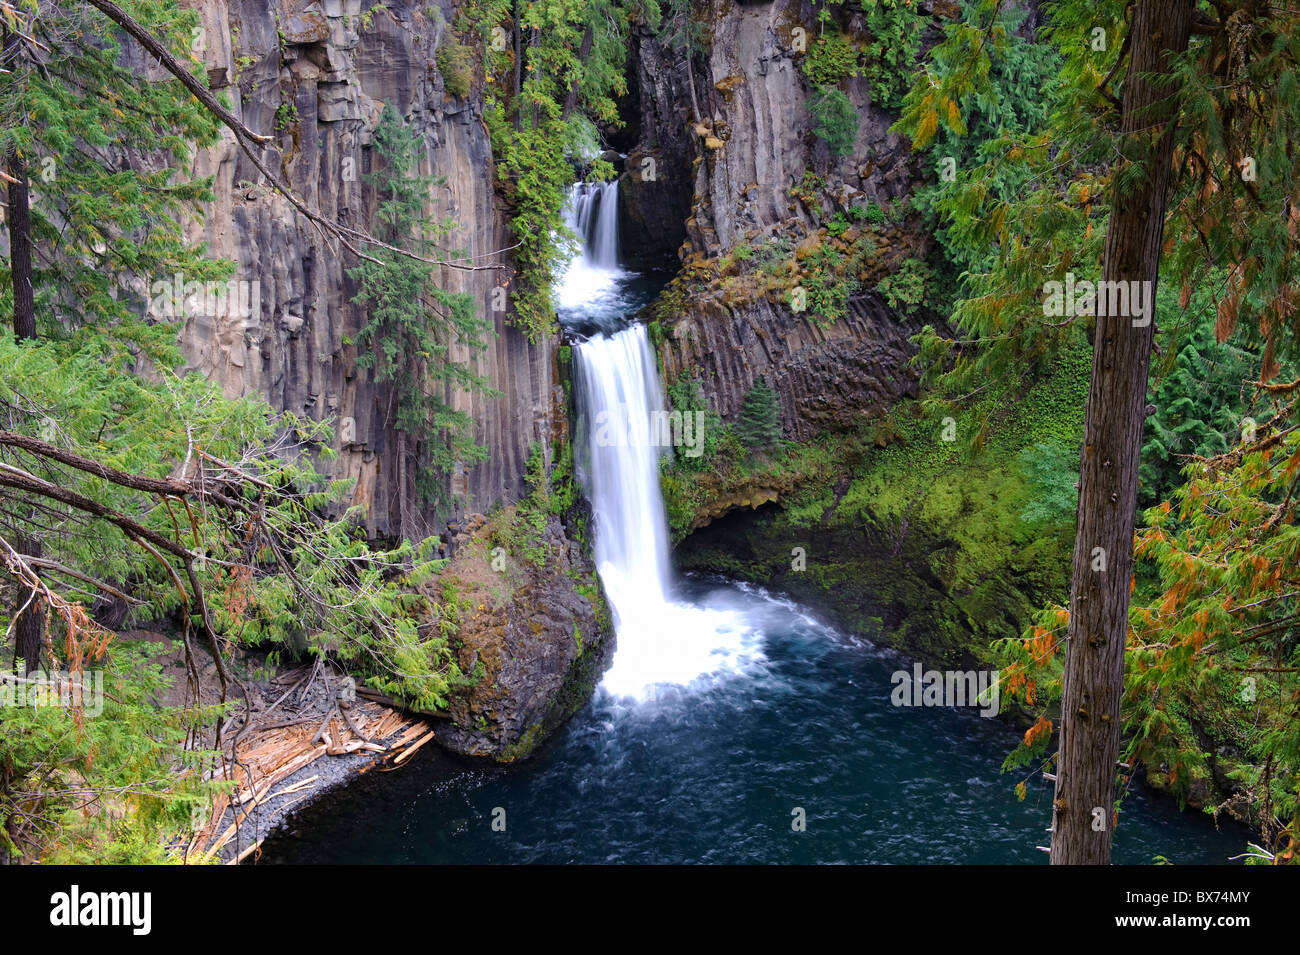 USA, Oregon, Toketee Falls Stock Photo